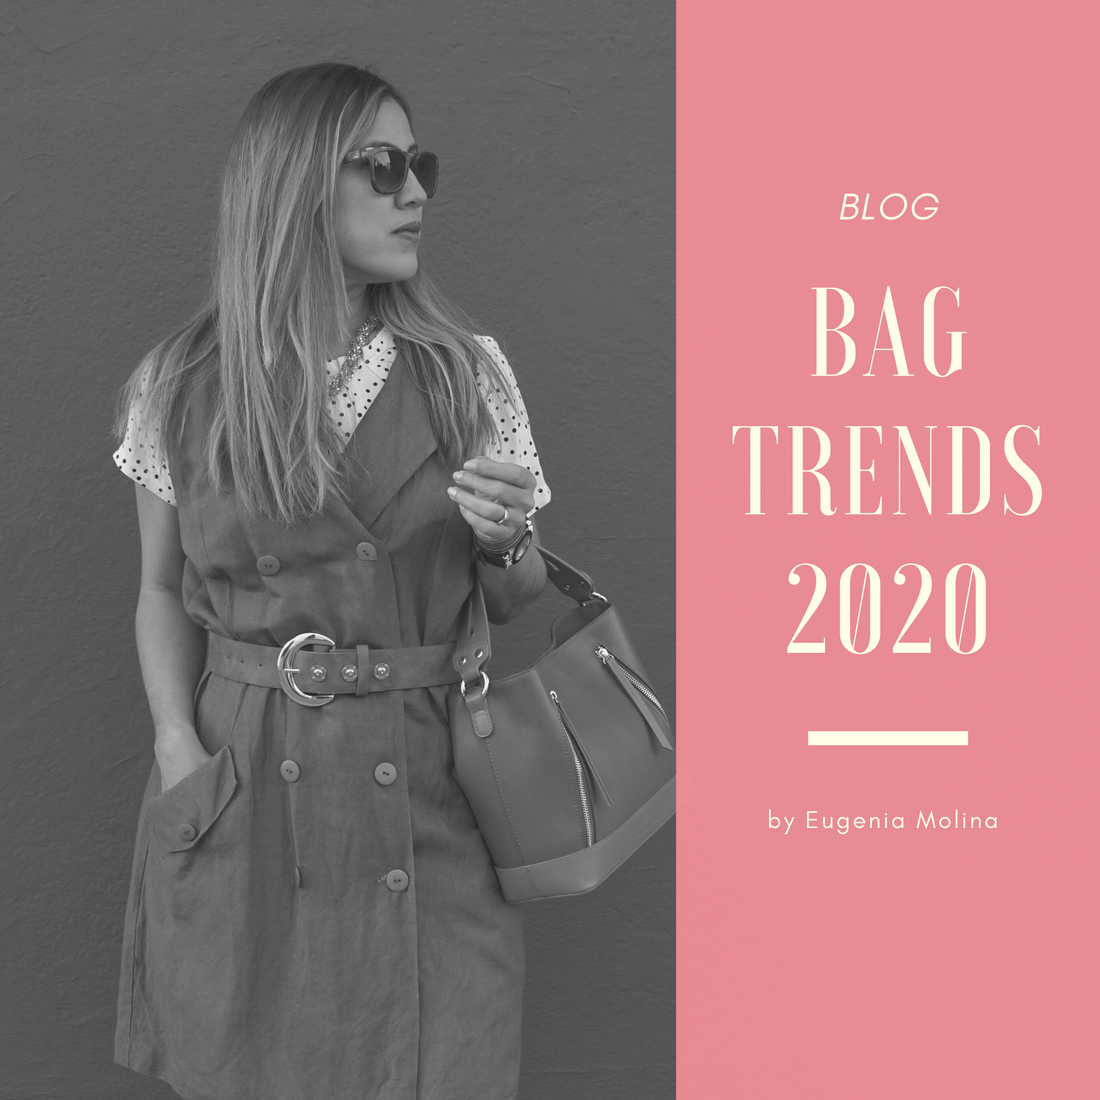 Bag trends designer bags 2020